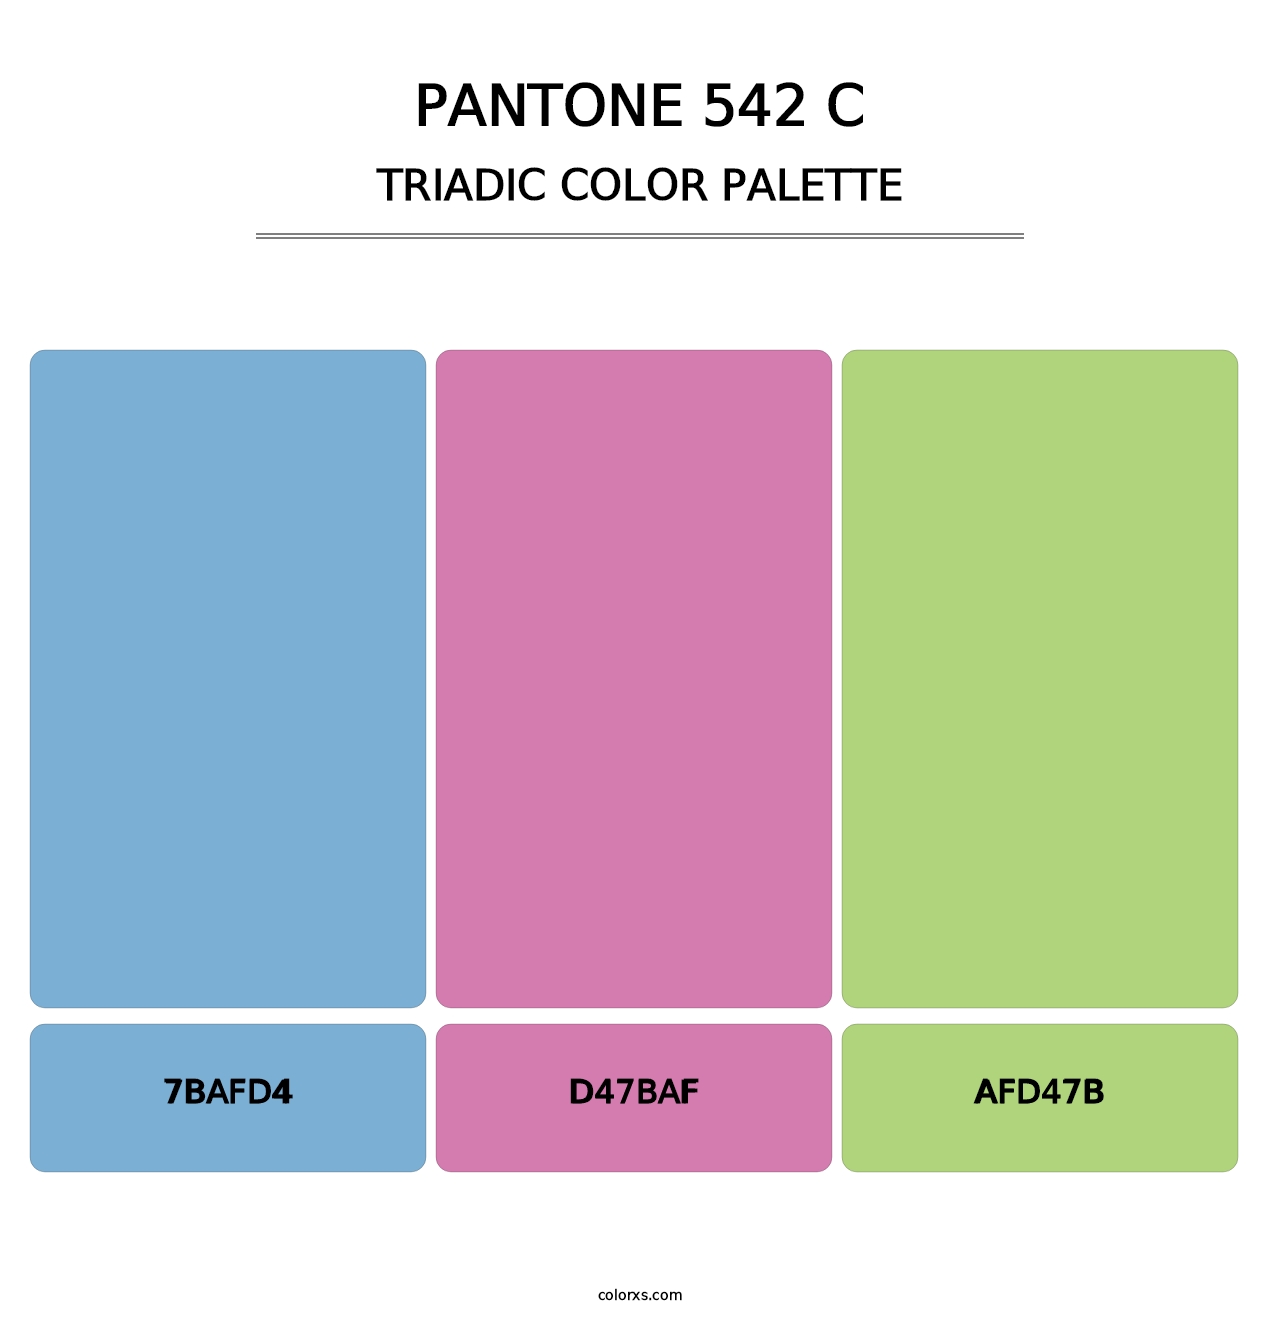 PANTONE 542 C - Triadic Color Palette